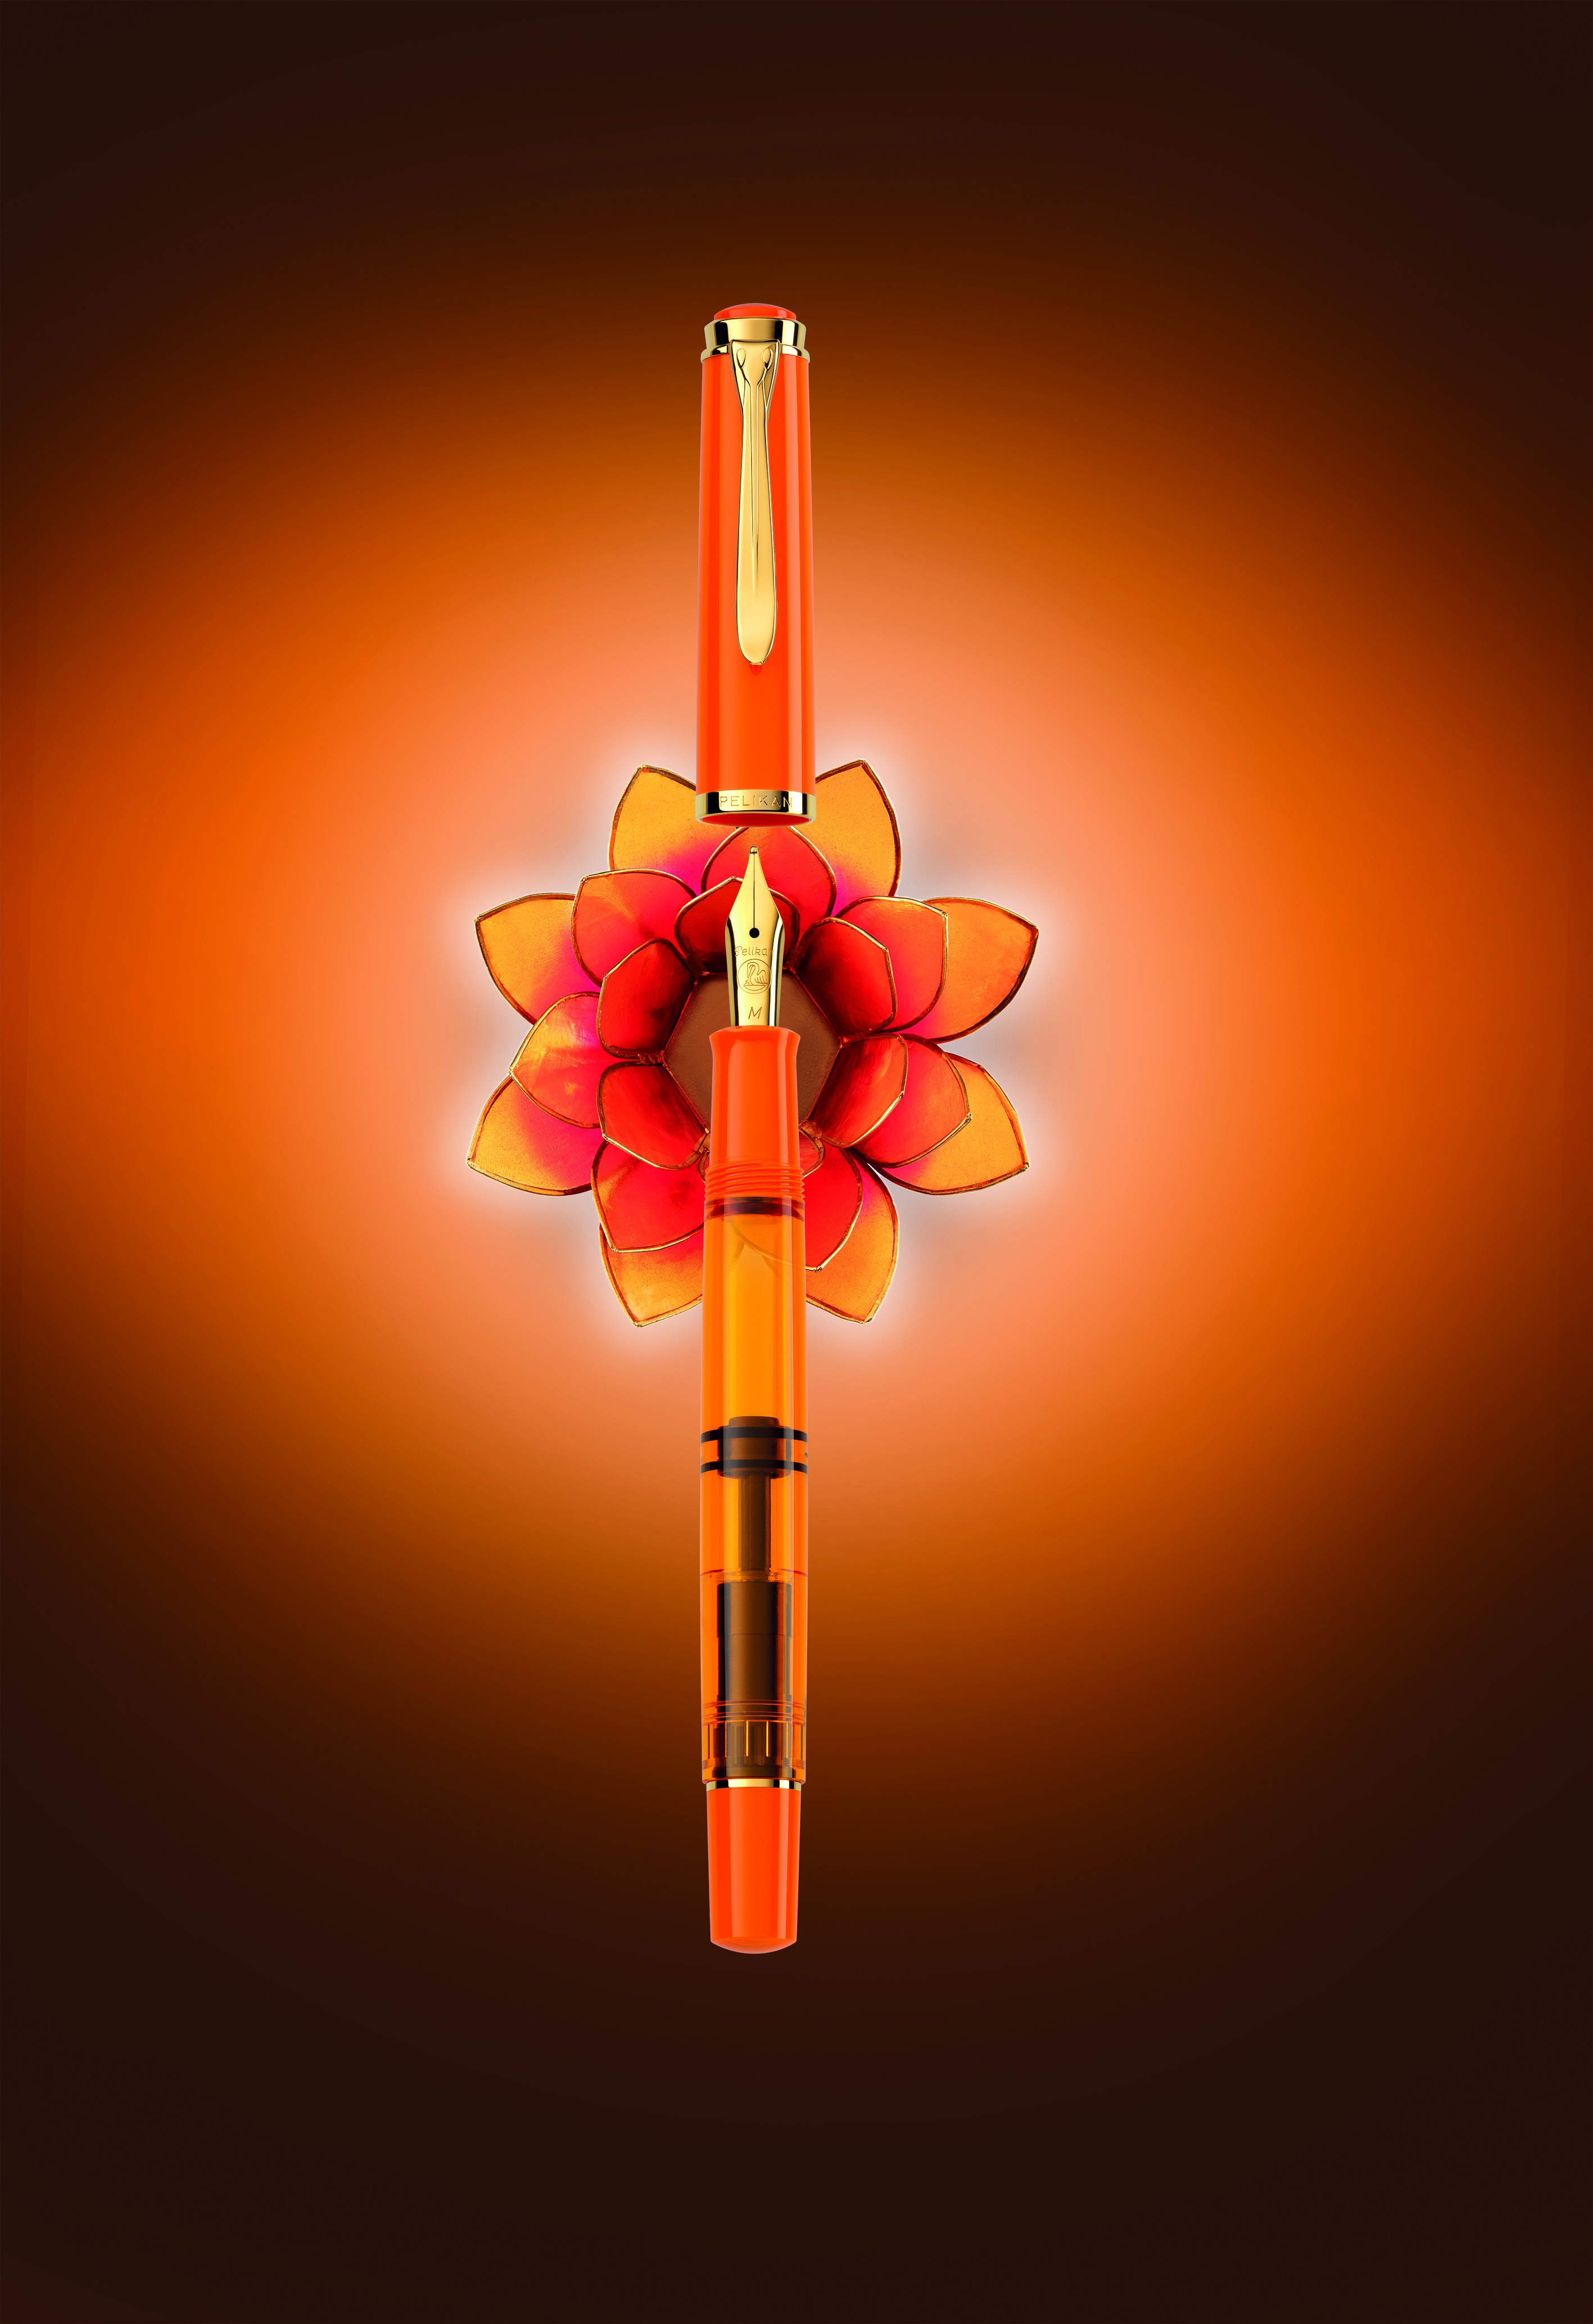 Pelikan Classic M200 Orange Delight Special Edition Fountain Pen